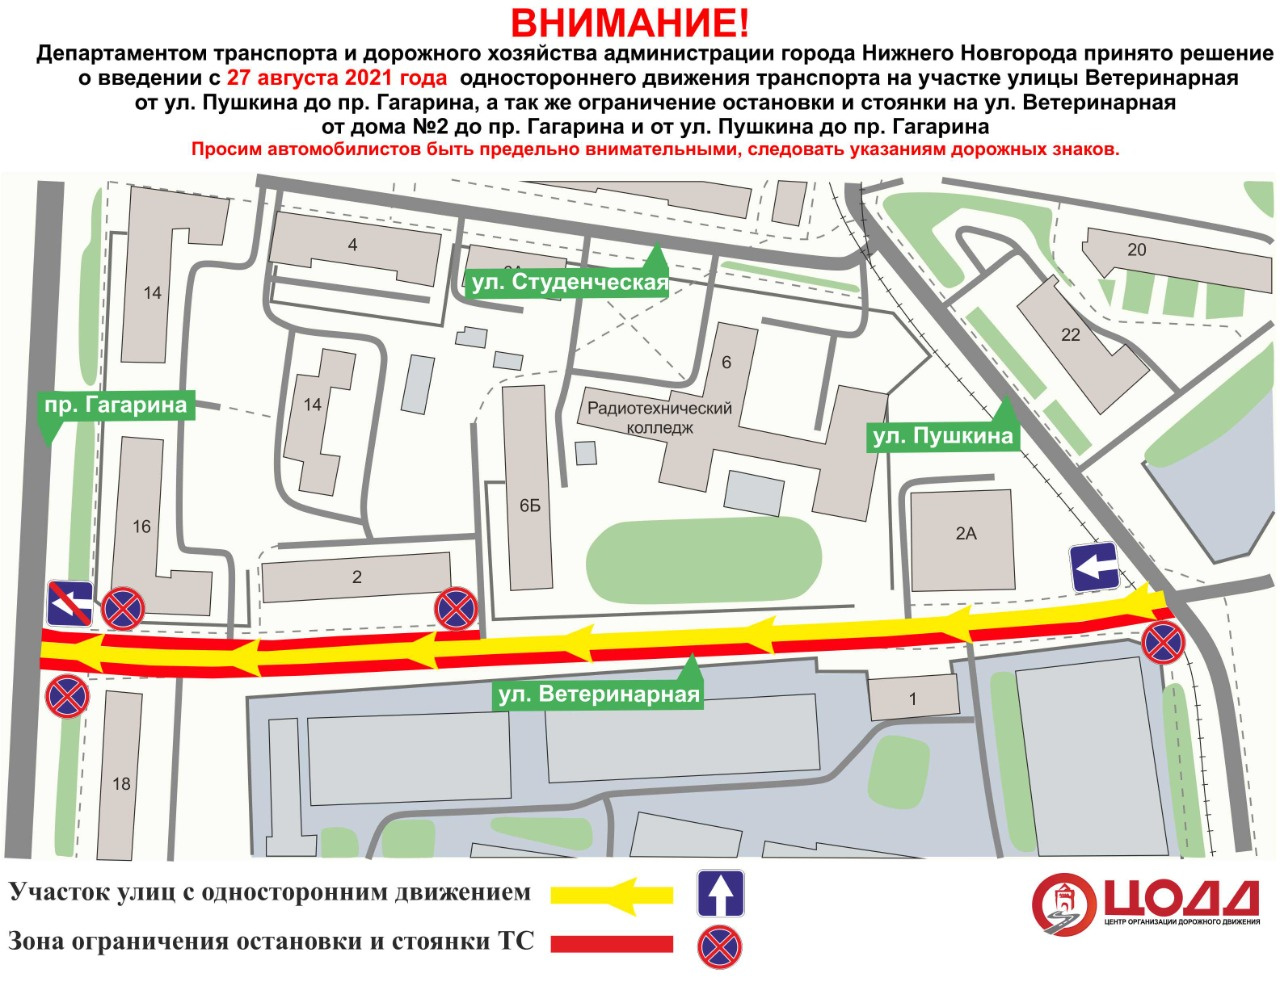 Поворот с проспекта Гагарина на улицу Ветеринарную будет запрещен